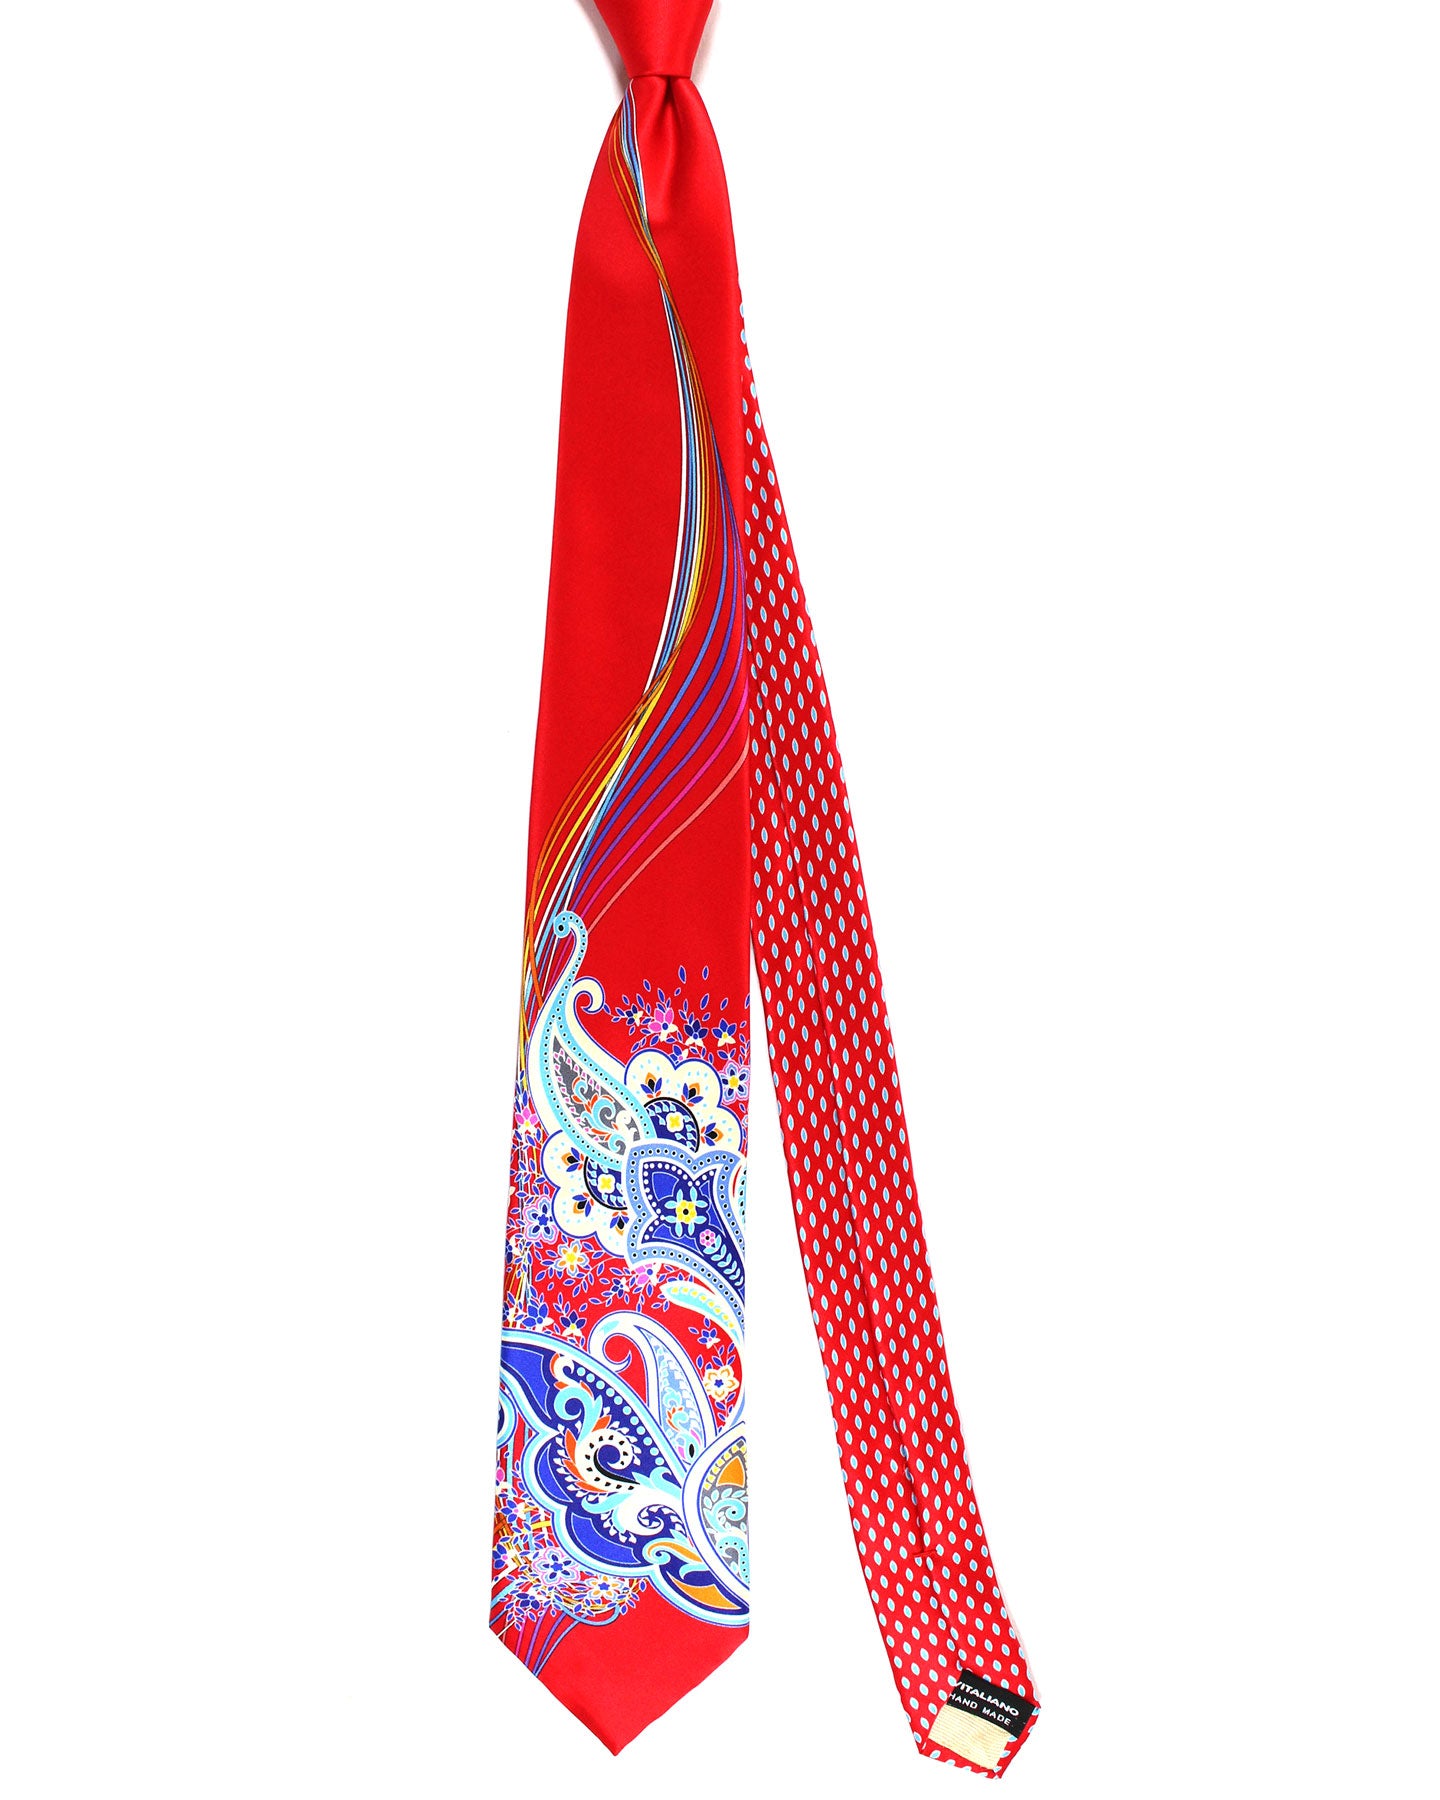 Vitaliano Pancaldi Silk Tie Red Royal Blue Paisley Design